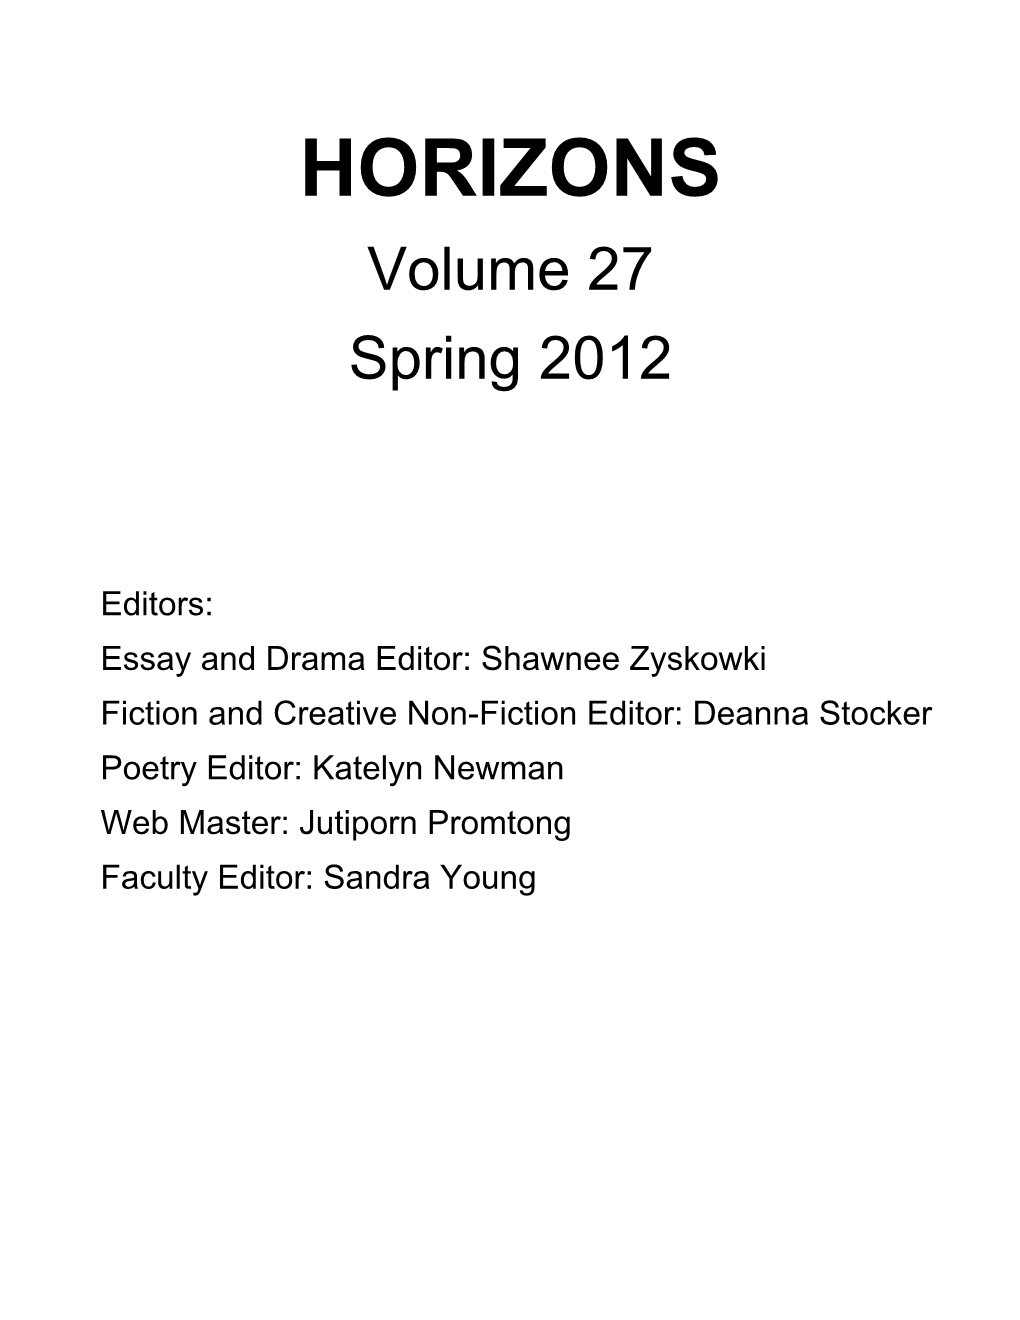 HORIZONS Volume 27 Spring 2012